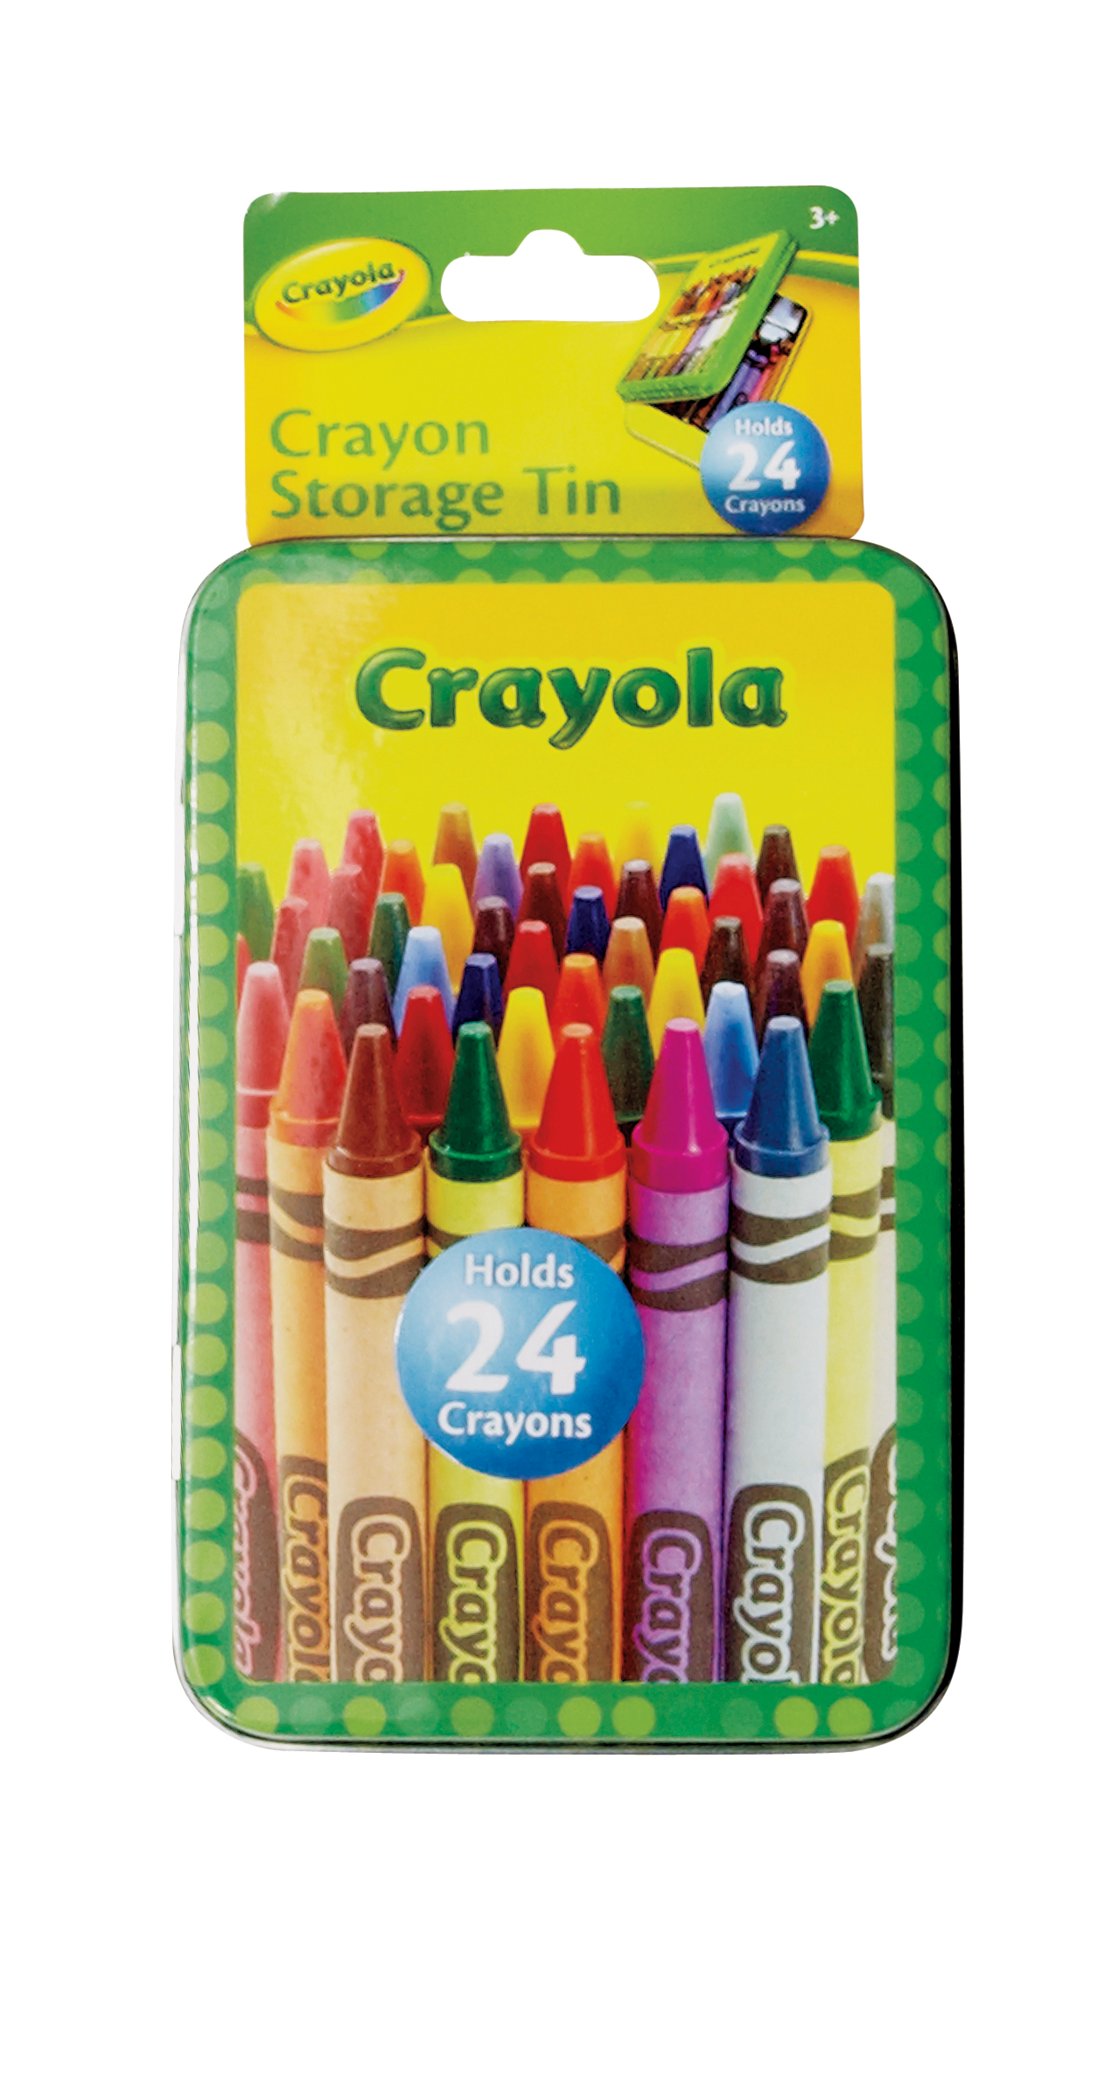 H-E-B Crayons - Shop Crayons at H-E-B